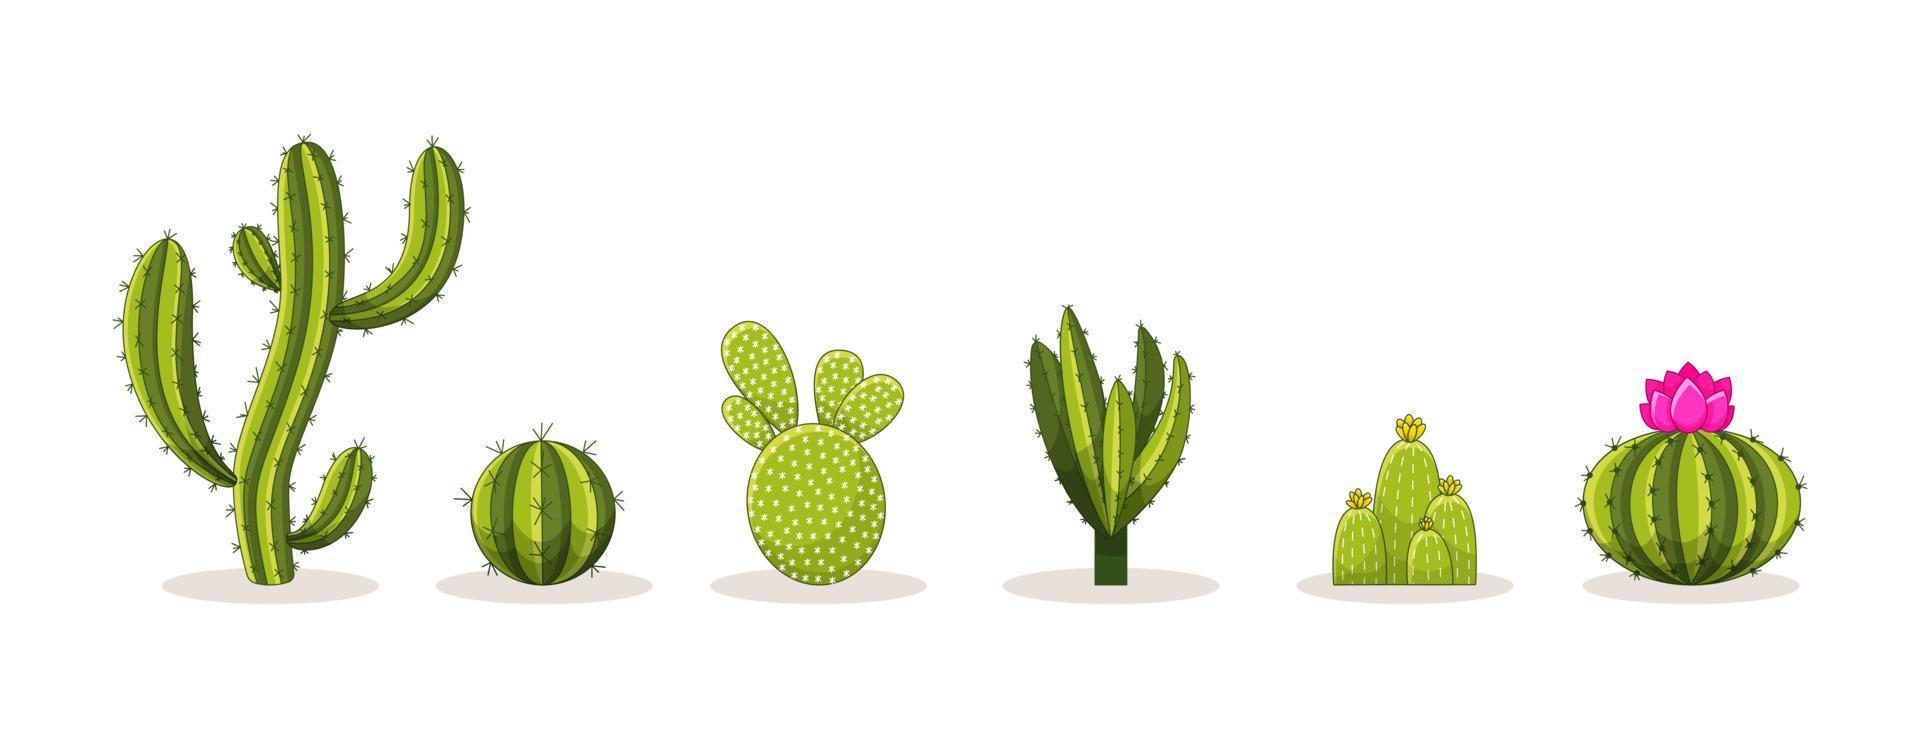 conjunto de cactus con espinas y flores. cactus de plantas verdes mexicanas con espinas. elemento del desierto y el paisaje del sur. ilustración vectorial plana de dibujos animados. aislado sobre fondo blanco vector